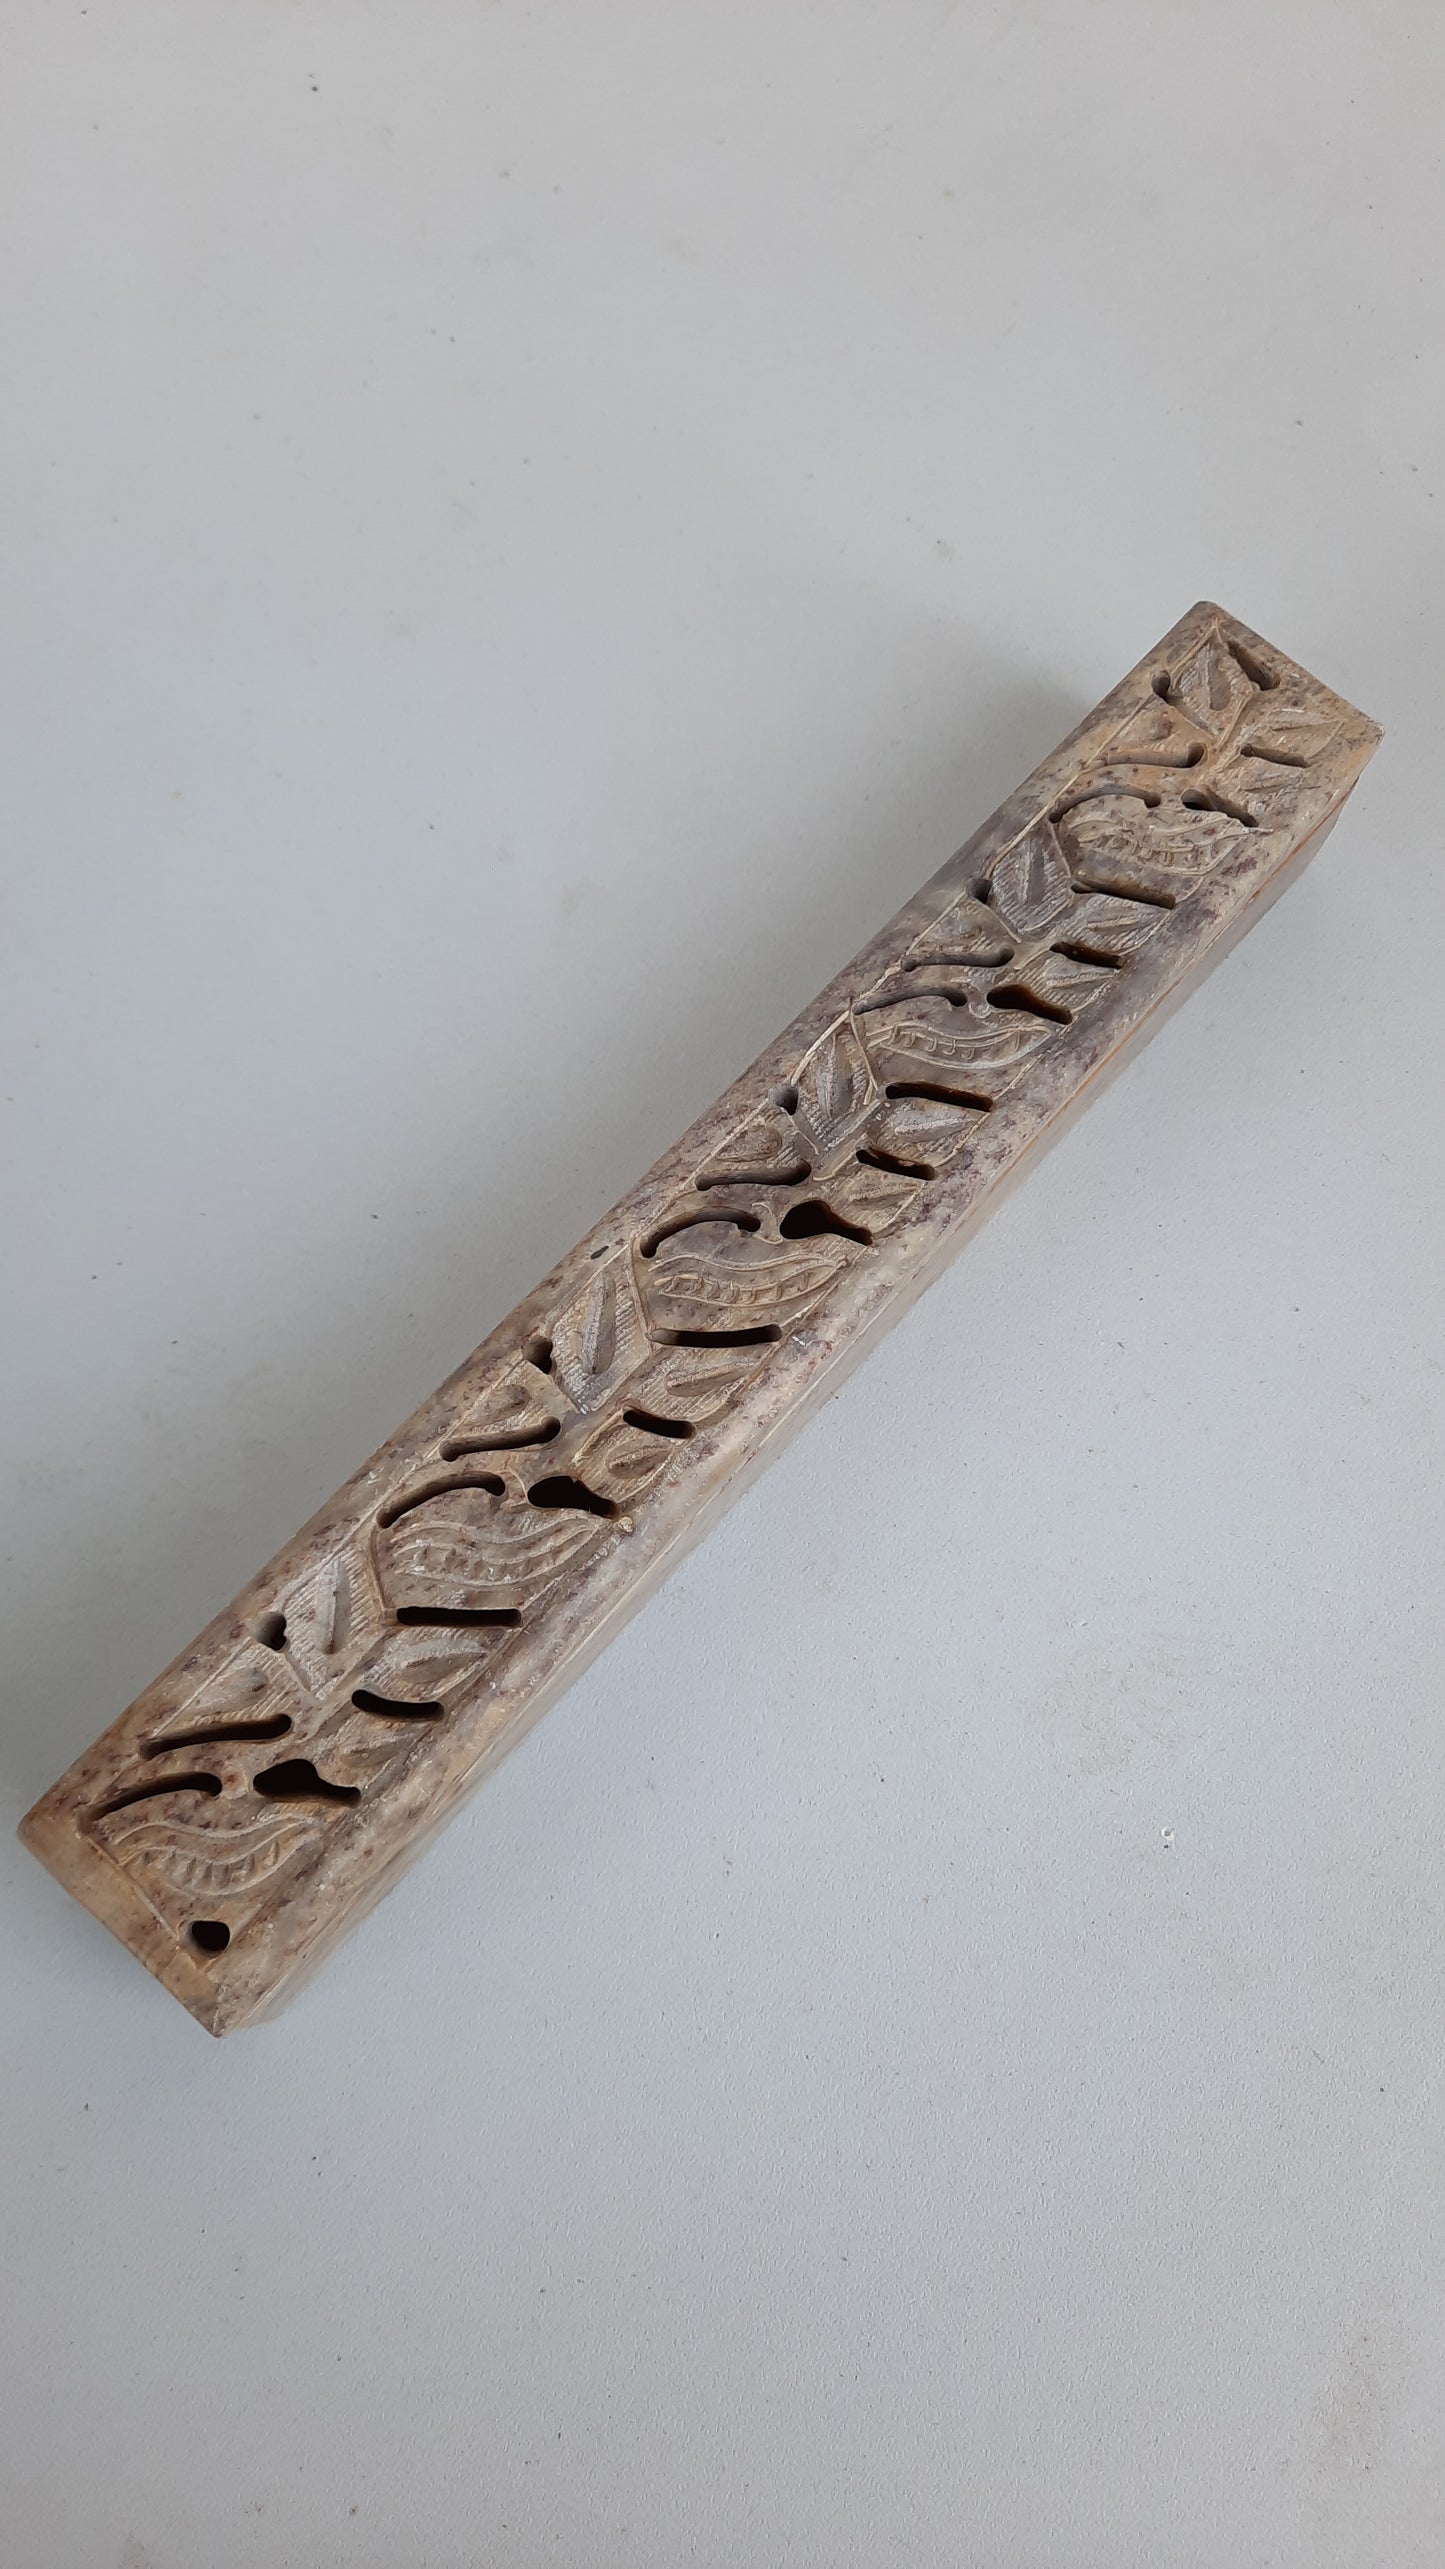 Carved Soapstone Incense Burner Box & Holder